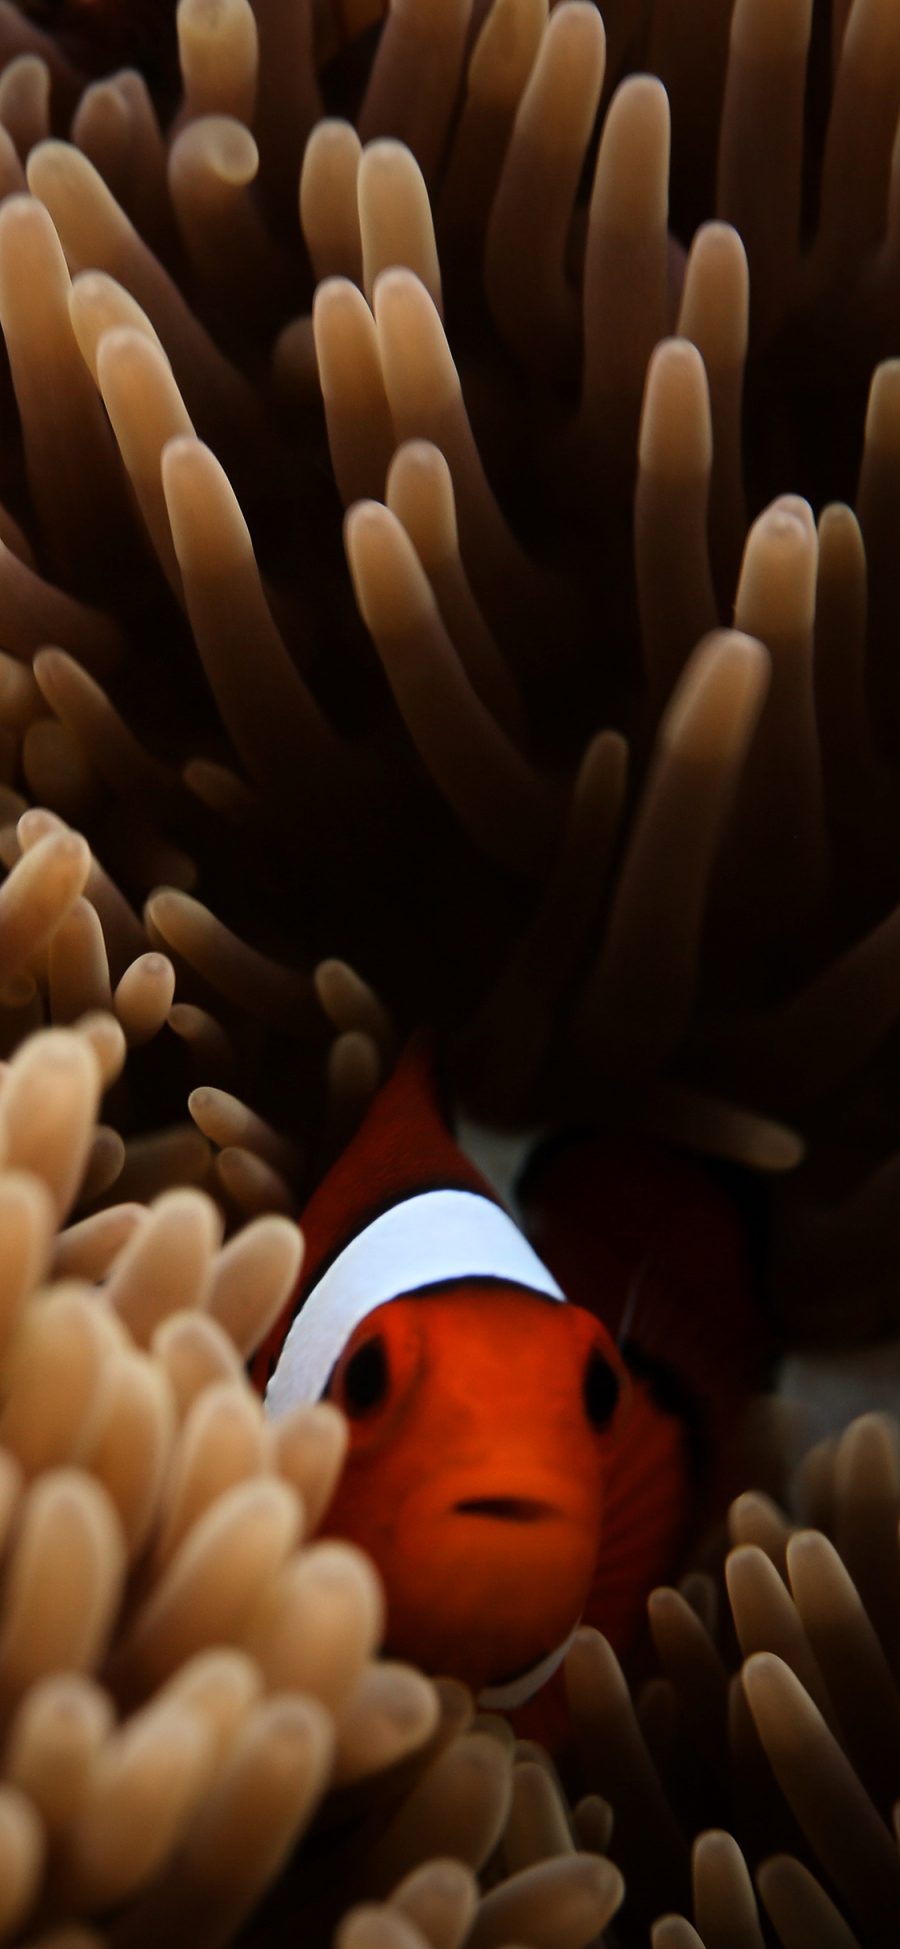 [2436×1125]海洋生物 珊瑚群 小丑鱼 苹果手机壁纸图片